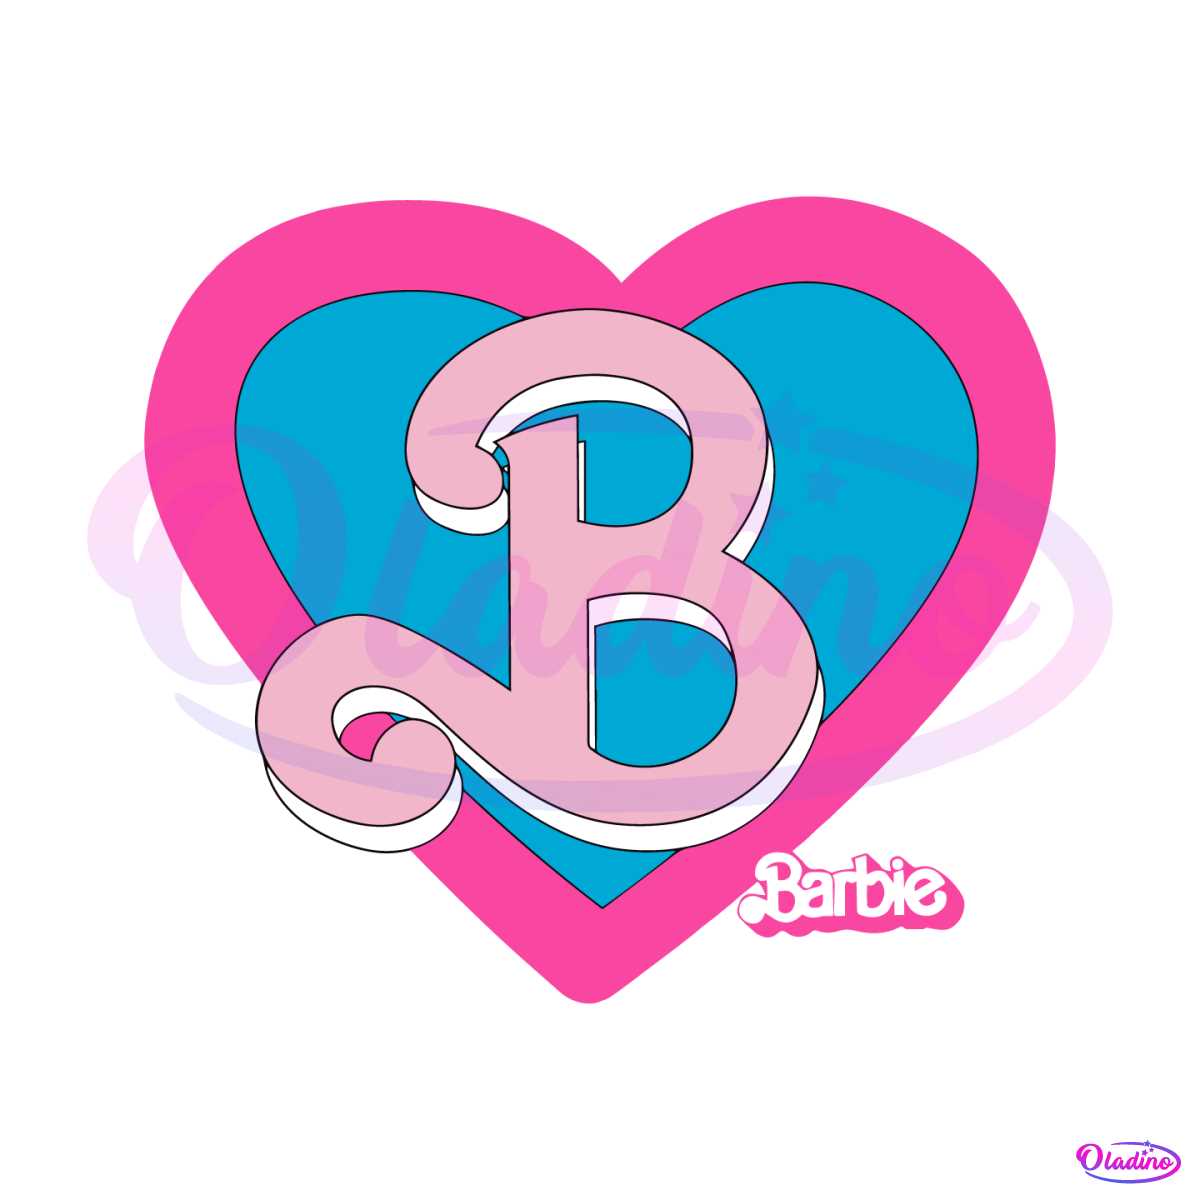 barbie-movie-logo-come-on-barbie-svg-digital-cricut-file